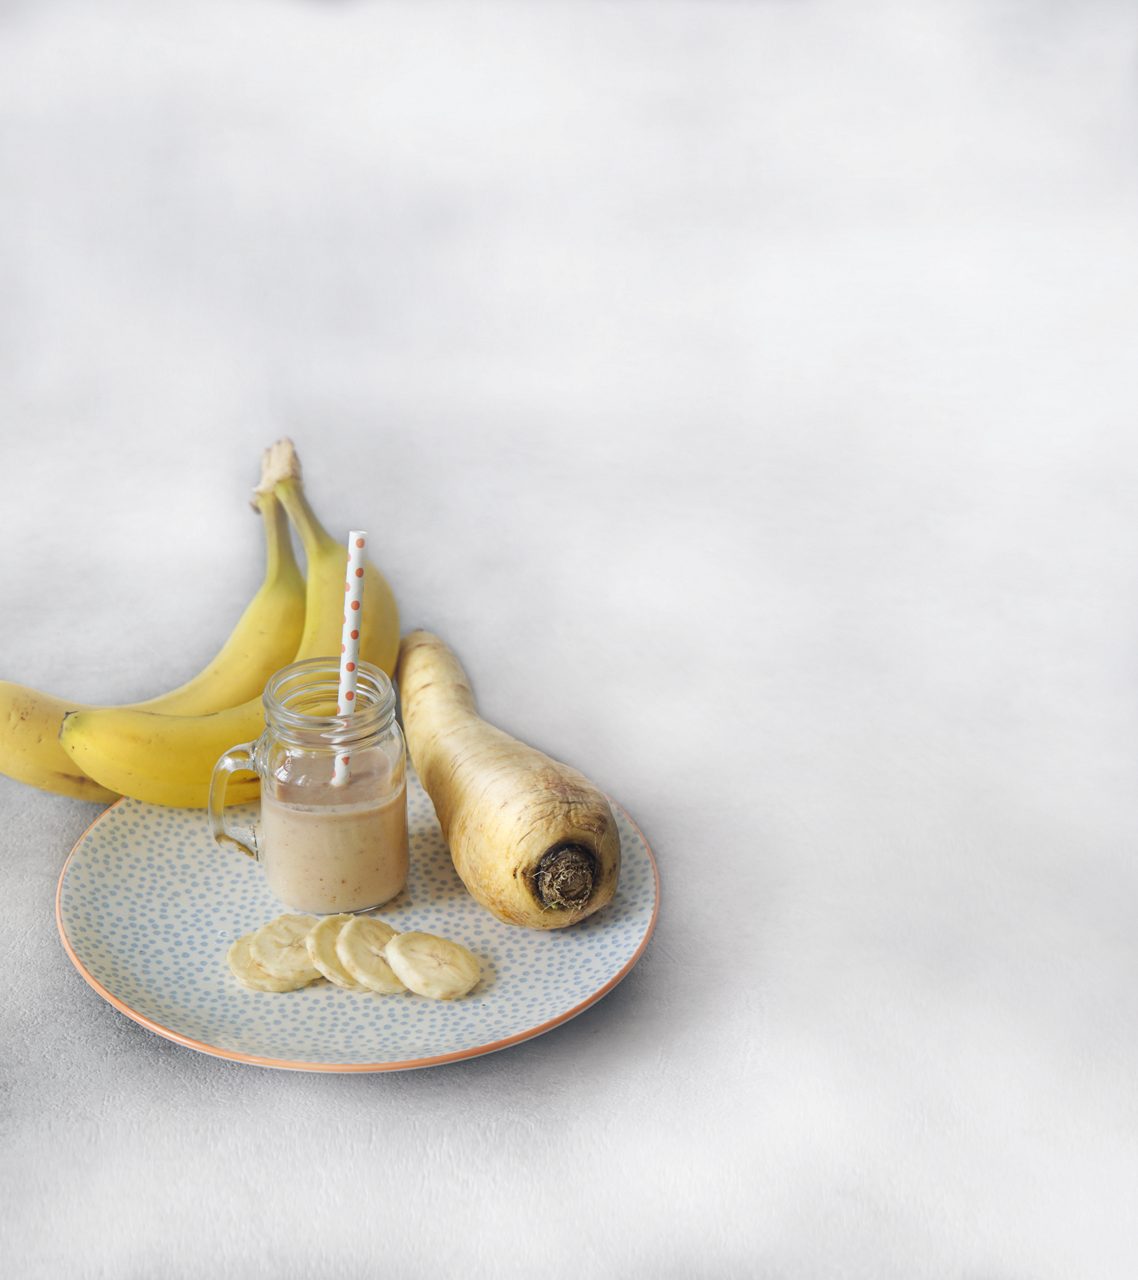 1890x2126px-milupa-rezept-smoothie-banane-pastinake